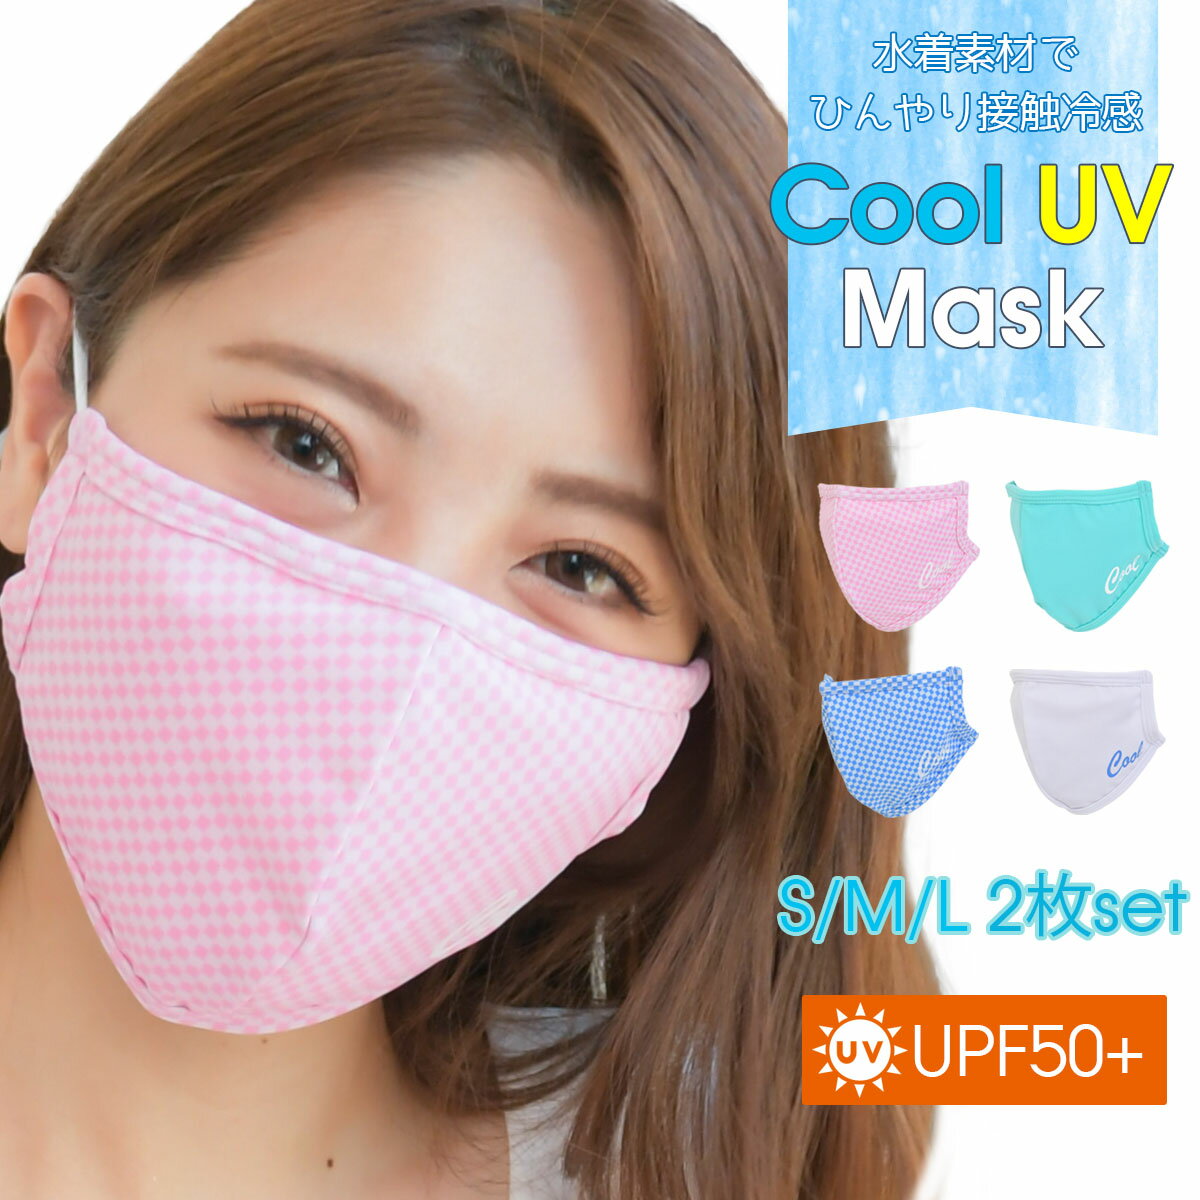 商品説明クールマスクというマスクの発売は各社から進められているなかで、水着メーカーだから出来ることが何なのかのアイデアを出し合い、作り出したマスクが、PixyParyのUVクールマスク。UPF50プラスの水着生地なので、紫外線対策にも。サマータオルなどに使用する接触冷感素材に着目。水分を含むとヒンヤリする素材なので、呼吸で出る水分でマスクの内部がひんやり。吐く息は生温かいものであったとしても、マスクの中はひんやりとする効果で息苦しさを和らげてくれます。 商品名 Pixy Party　Cool UV Mask〜クールUVマスク〜 全4色 商品詳細 素材：82％ポリエステル、18％スパンデックス（内側：接触冷感生地） サイズ：S・M・L カラー：アイスホワイト/フローズンブルー/フローズンピンク/オーシャンブルー 商品縦サイズ：S 約12.5cm/M 約 13.5cm/L 14.5cm モデル着用サイズ：Lサイズ 仕様：ガーゼポケット付き/イヤーバンドで調整可 注目キーワードマスク 冷感 冷感マスク 水着生地 紫外線対策 接触冷感素材 ヒンヤリ ひんやり クール 息苦しさ緩和 ストレッチ 顔にフィット ガーゼポケット付 通気性 速乾性 保湿効果 洗えるマスク 水洗いOK 衛生的 吸汗速乾 乾きやすい 夏用ひんやりマスク 冷たいマスク 夏 大人用 子供用 おしゃれ かわいい 可愛い 柄 柄物 女性用 小さめ 大きめ 個包装 uvマスク ▼その他のマスク▼ 数量限定ひんやりマスク5枚Set980円 不織布マスク 小顔マスク